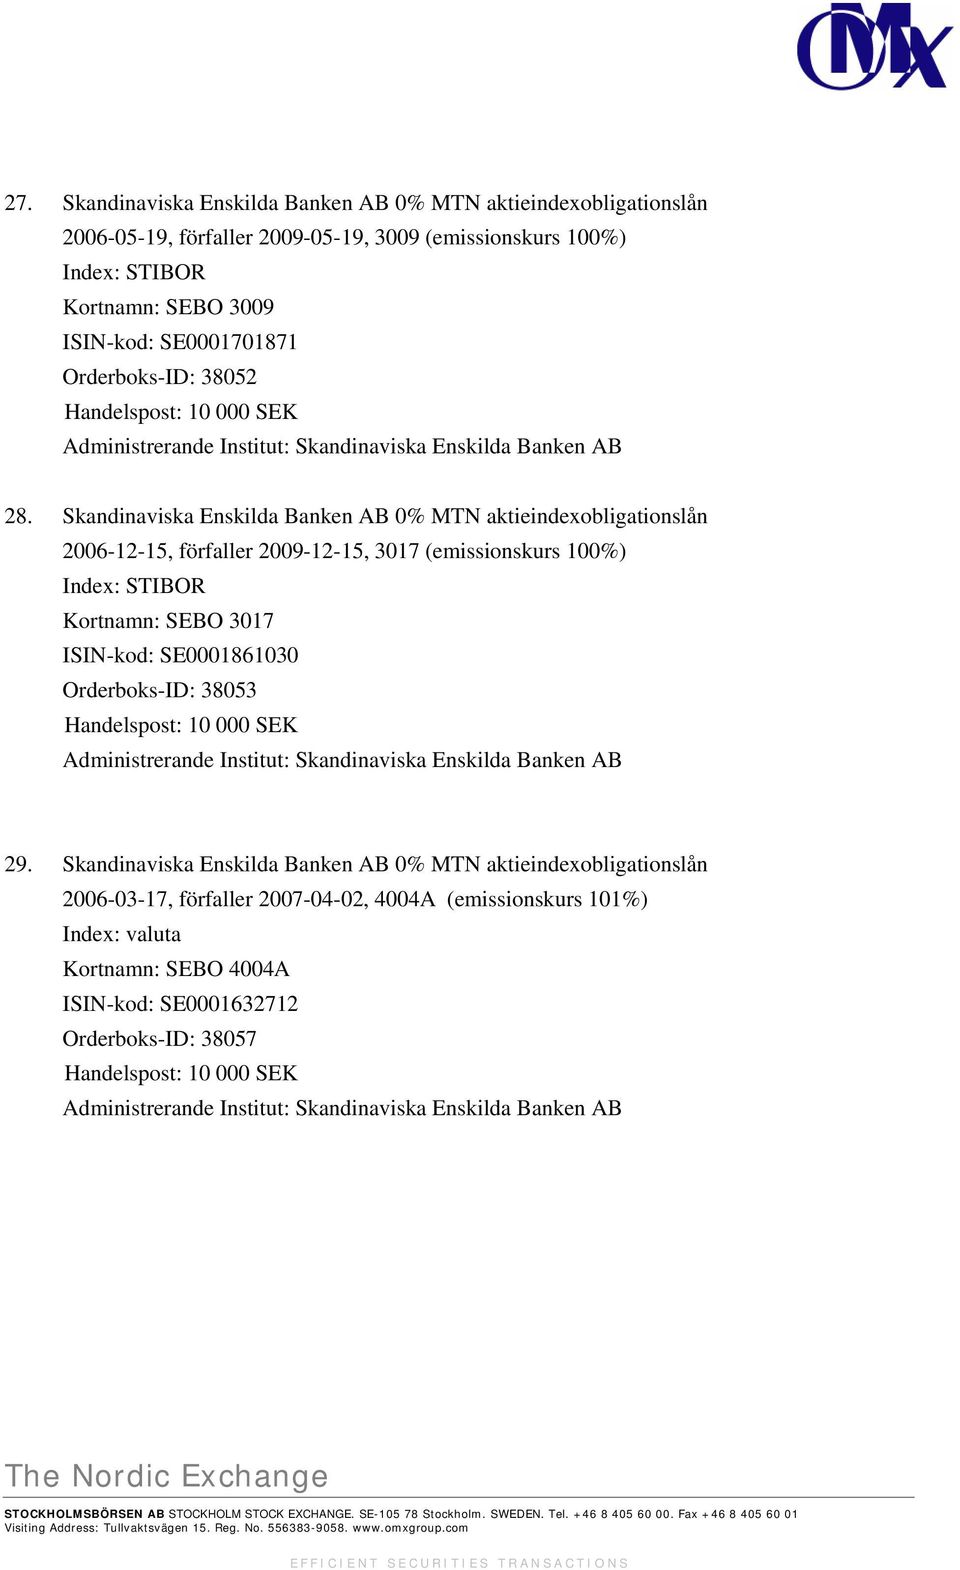 Skandinaviska Enskilda Banken AB 0% MTN aktieindexobligationslån 2006-12-15, förfaller 2009-12-15, 3017 (emissionskurs 100%) Index: STIBOR Kortnamn: SEBO